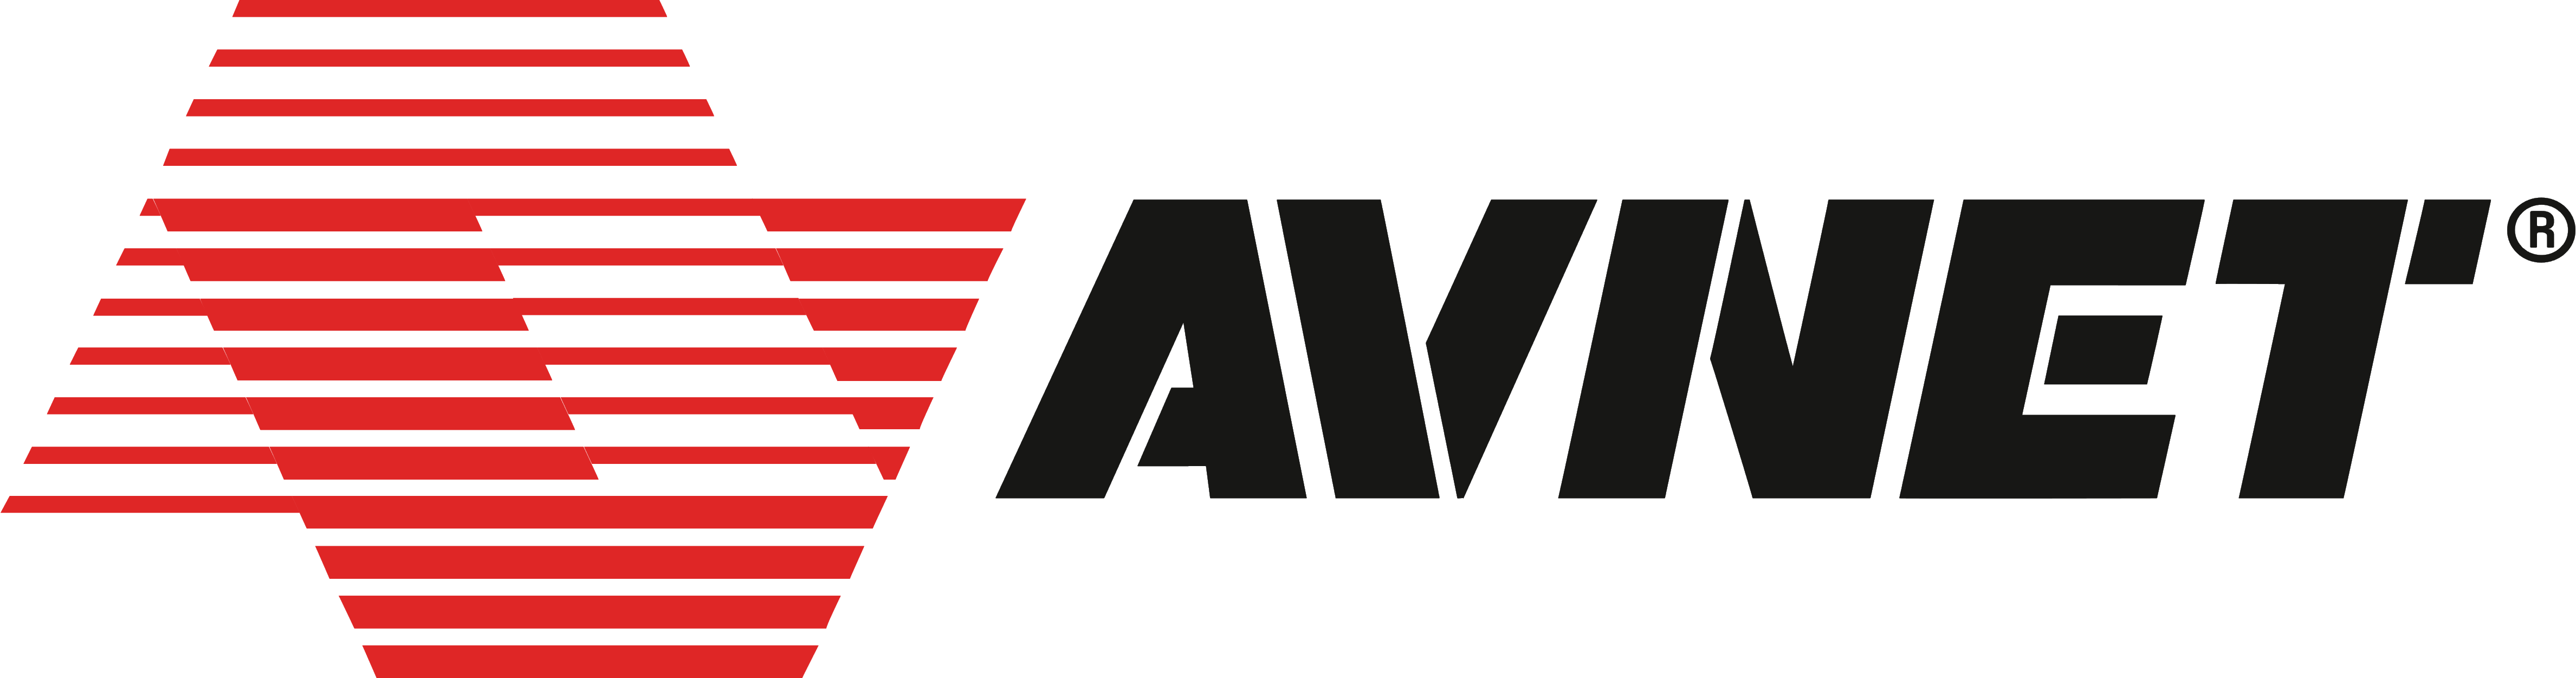 Avnet Logo PNG - 175440